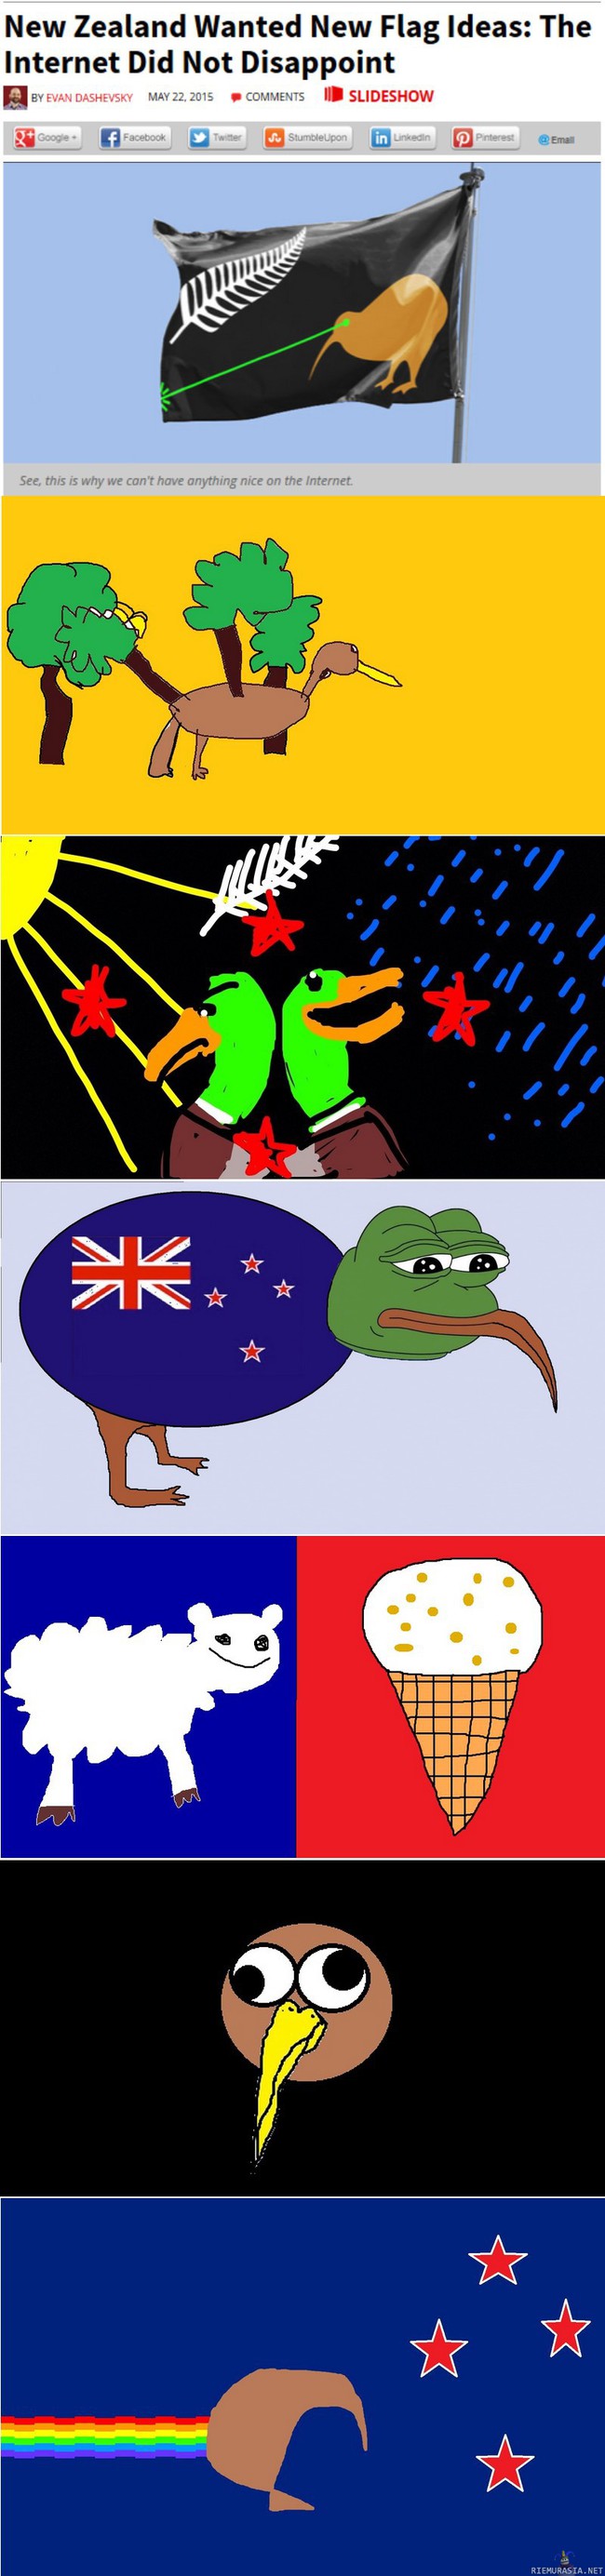 Uusi-Seelanti haluaa uuden lipun - Uusi-Seelanti valmistautuu kaksivaiheiseen kansanäänestykseen, jonka tarkoituksena on päättää, pitäisikö maan lippu vaihtaa toisenlaiseksi.

Maan hallitus ajaa muutosta, koska sen mielestä Uuden-Seelannin lippu sekoitetaan liian usein esimerkiksi Australiaan. 
 Ehdotuksia voi jättää hallituksen verkkosivulle heinäkuun puoliväliin saakka.

Mielenkiintoisia ehdotuksia on jo tullut, omasi voit jättää osoitteessa https://www.govt.nz/browse/engaging-with-government/the-nz-flag-your-chance-to-decide/